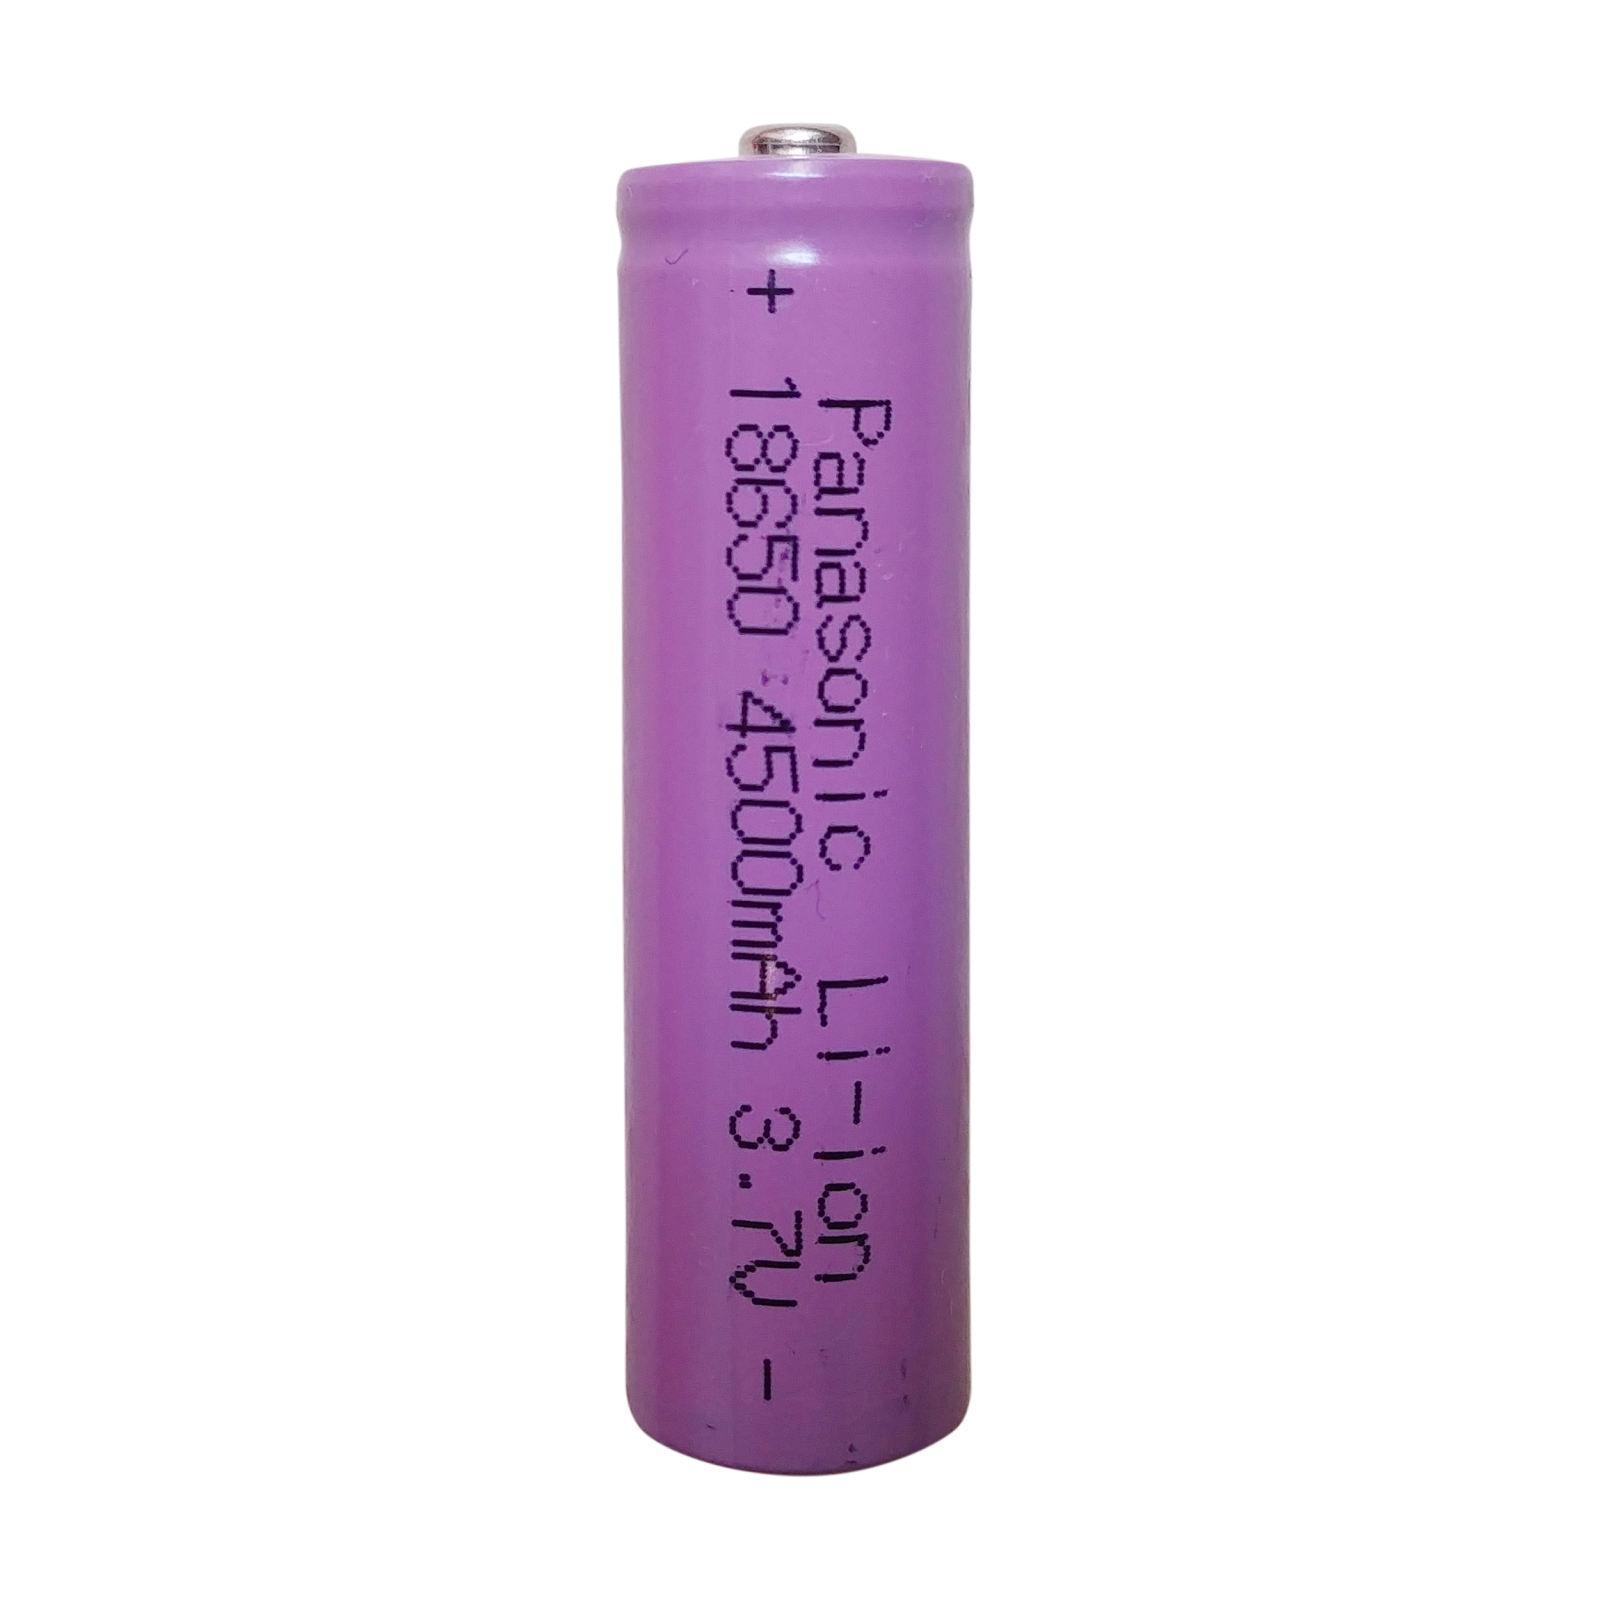 باتری لیتیوم-یون قابل شارژ پاناسونیک کد P-18650 ظرفیت 4500 میلی آمپرساعت بسته 10 عددی 